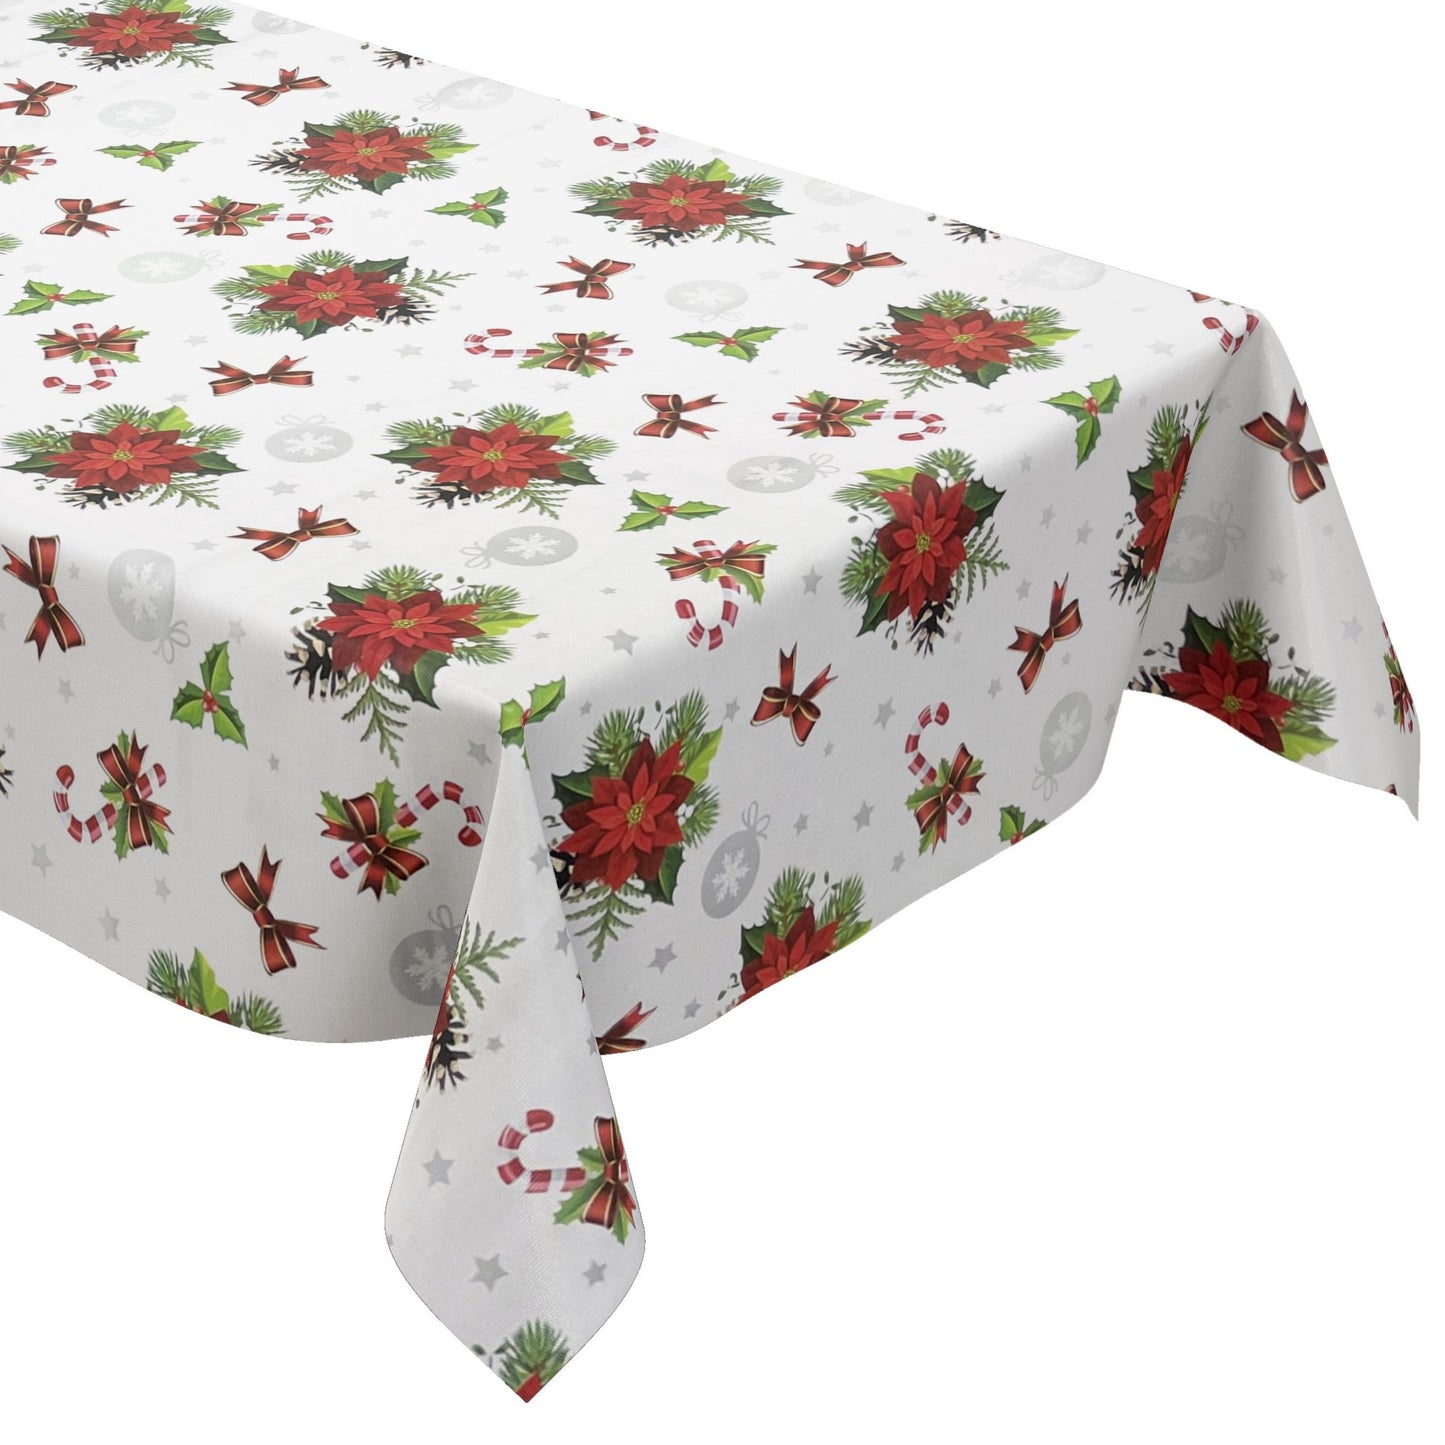 KEVKUS Wachstuch Tischdecke B6023-01 weiß Weihnachten Weihnachtsstern wählbar in eckig, rund und oval -